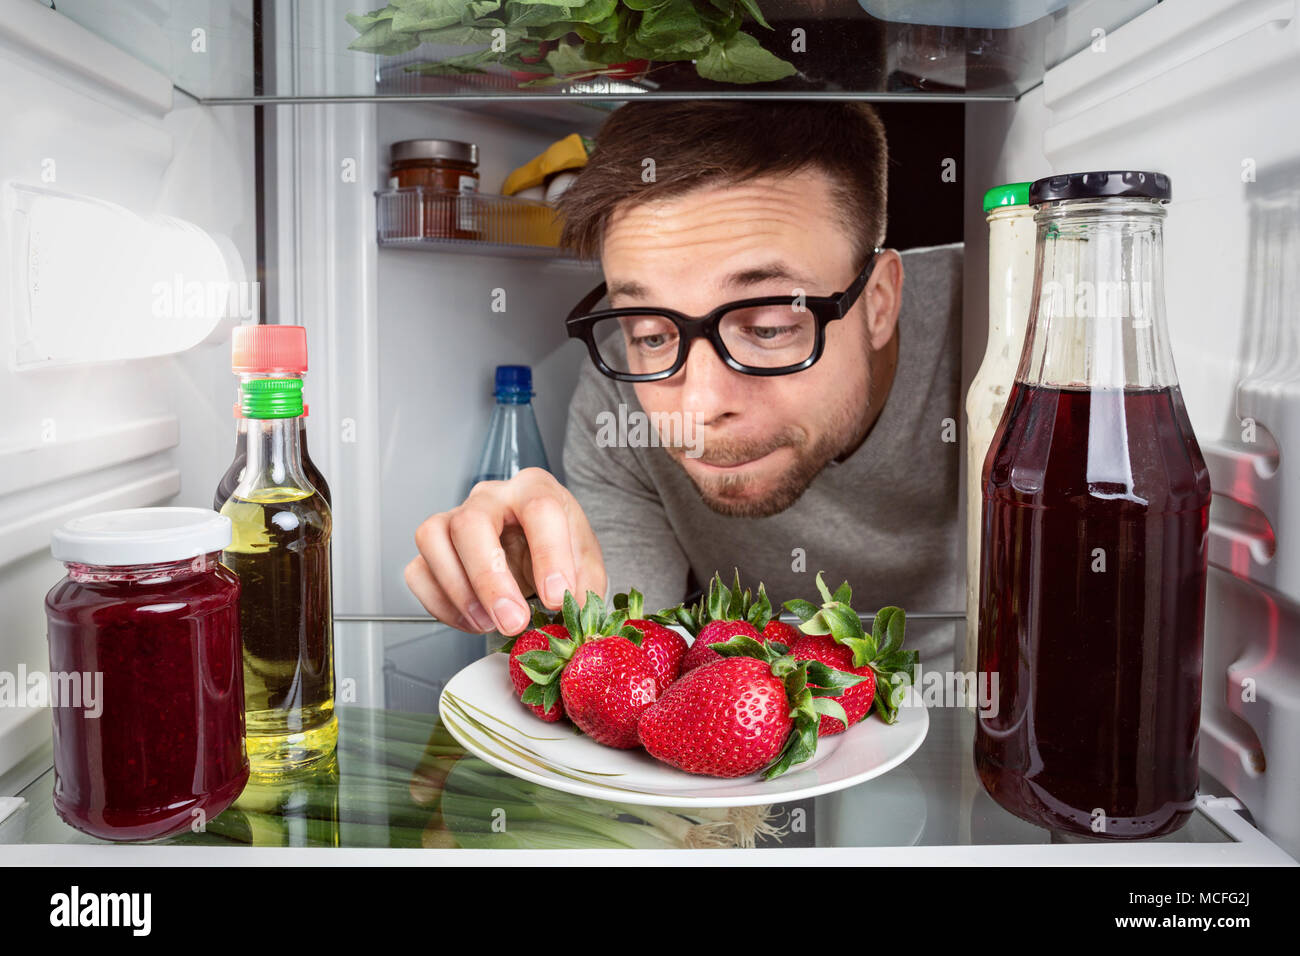 Mann erreichen für frische Erdbeeren im Kühlschrank Stockfotografie - Alamy